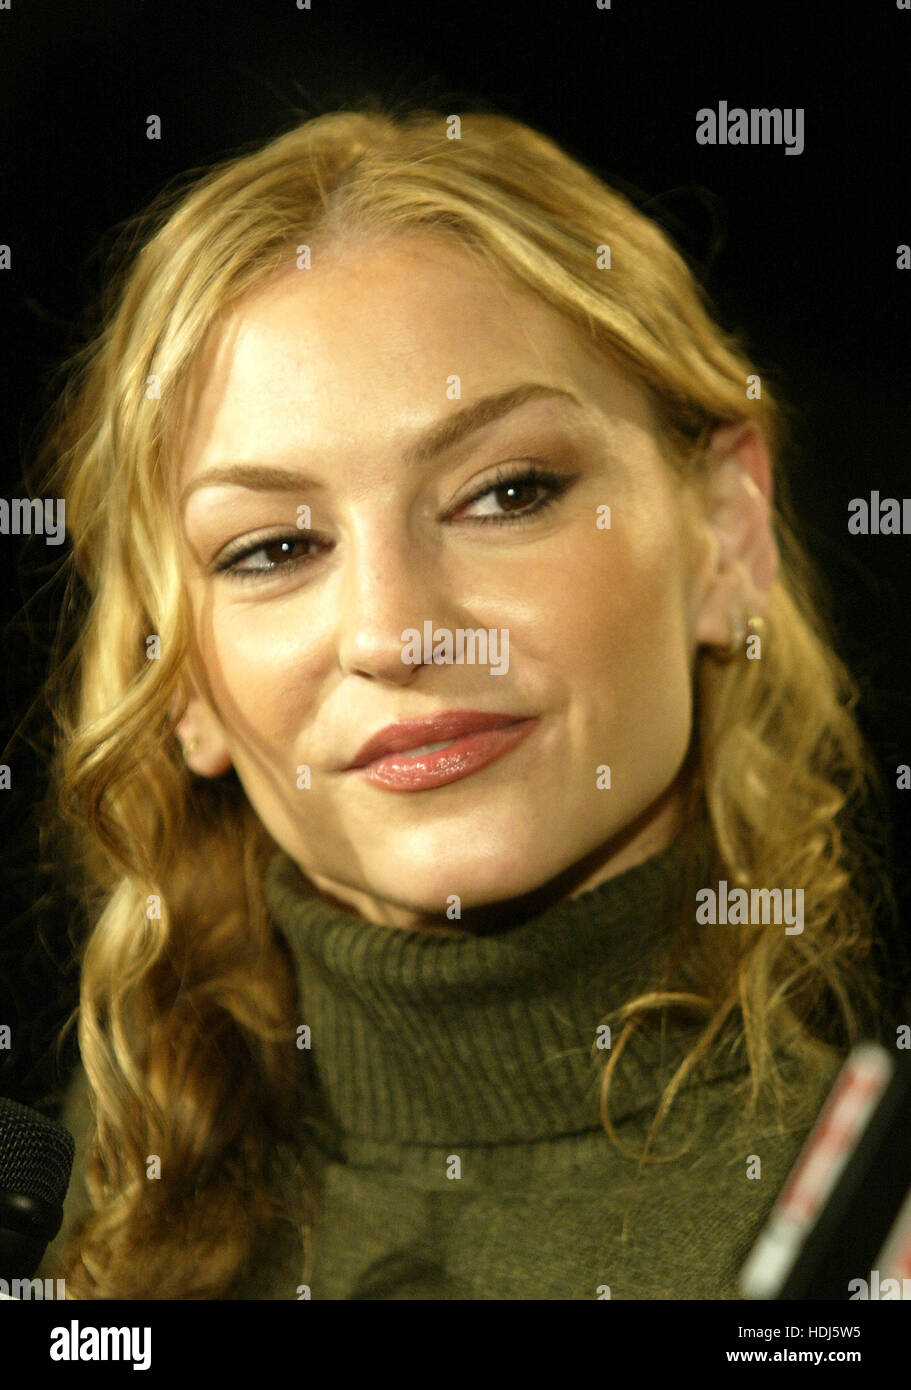 L'actrice Drea de Matteo lors des nominations au Golden Globe le 13 décembre 2004 à Beverly Hills. Crédit photo : Francis Specker Banque D'Images